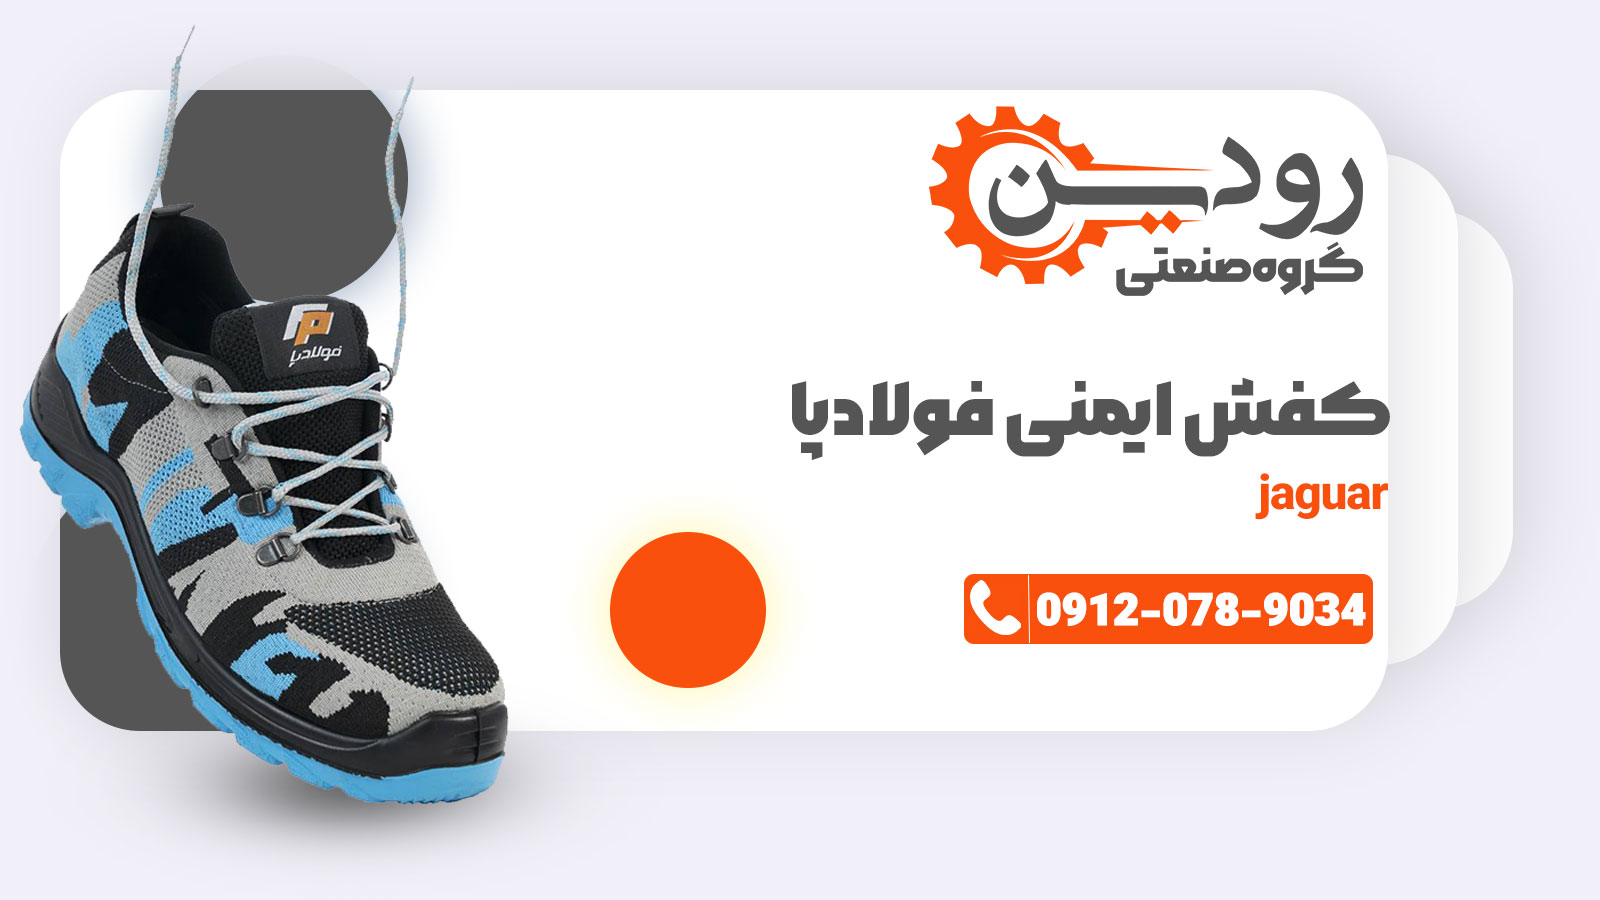 مرکز خرید کفش ایمنی فولاد پا در شهر اهواز، اصفهان، تهران، مشهد و... رودین صنعت است.